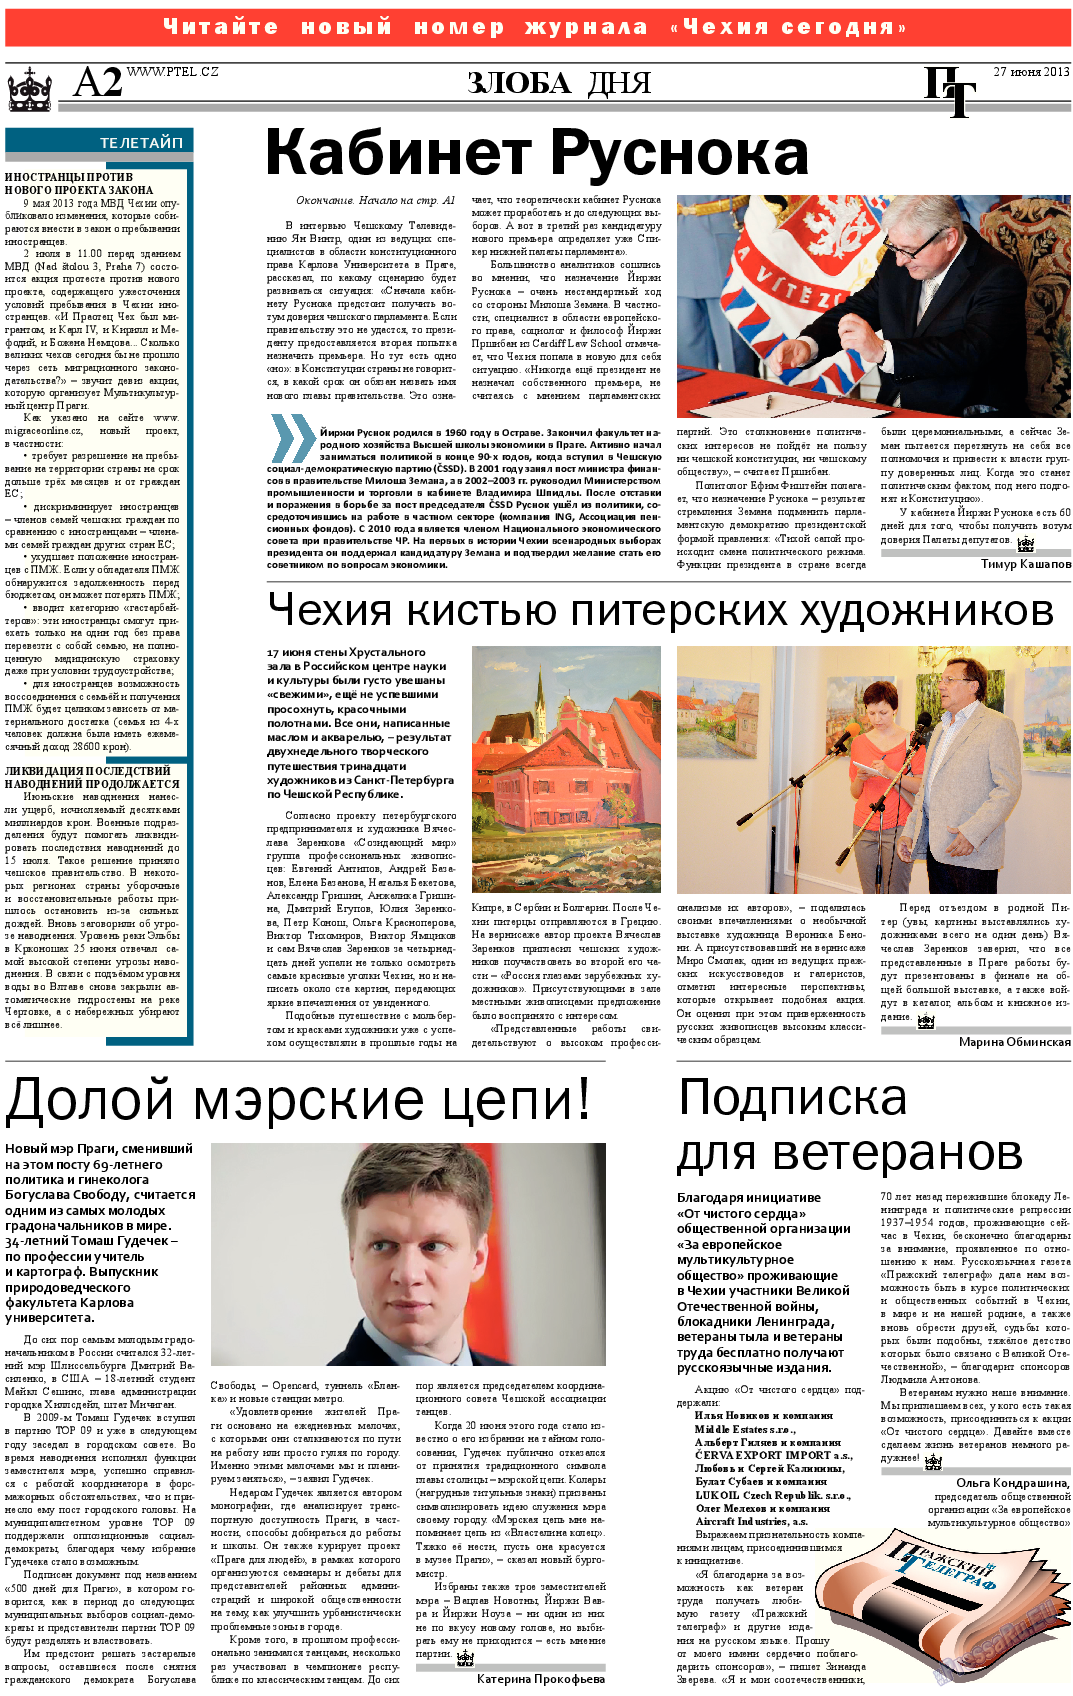 Пражский телеграф (газета). 2013 год, номер 25, стр. 2